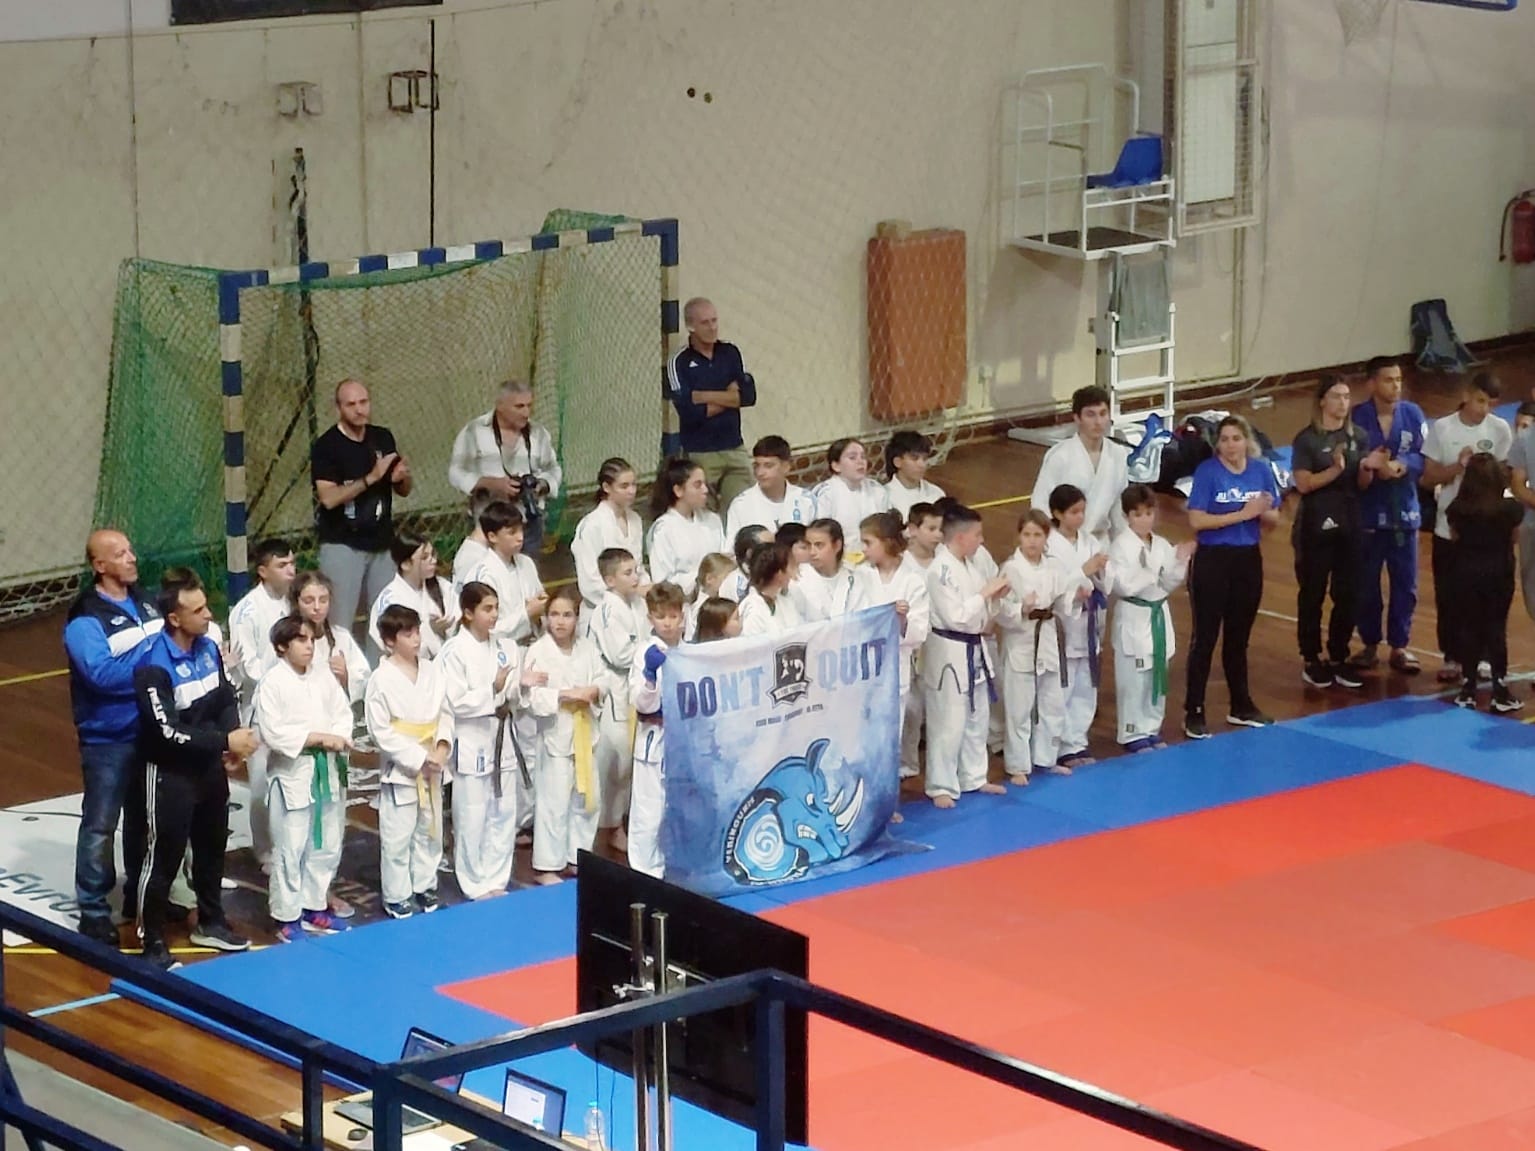 3η θέση για τον Α.Σ.”ΜΑΧΗΤΗ” στην γενική κατάταξη ανάμεσα σε 22 Αθλητικά Σωματεία στο Κύπελλο Ju-jitsu Ανατ. Μακεδονίας & Θράκης